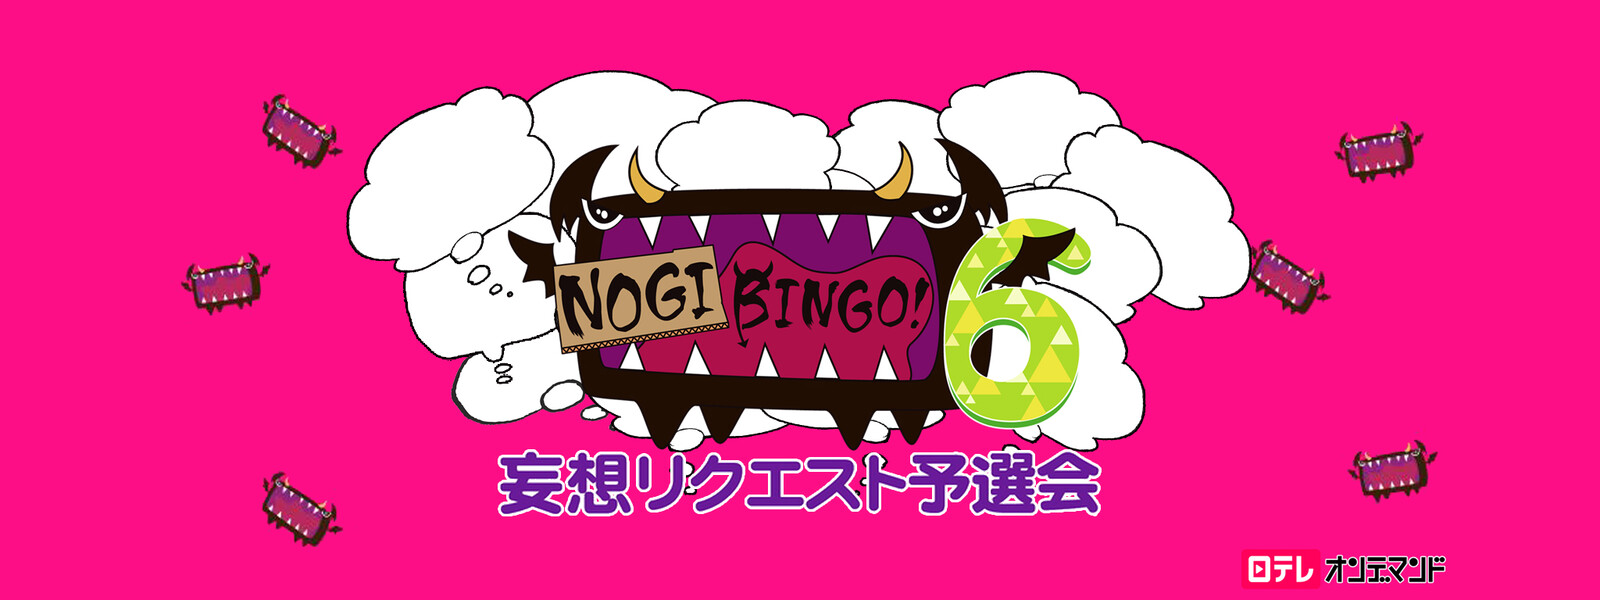 NOGIBINGO! 6 妄想リクエスト予選会の動画 - NOGIBINGO! 10